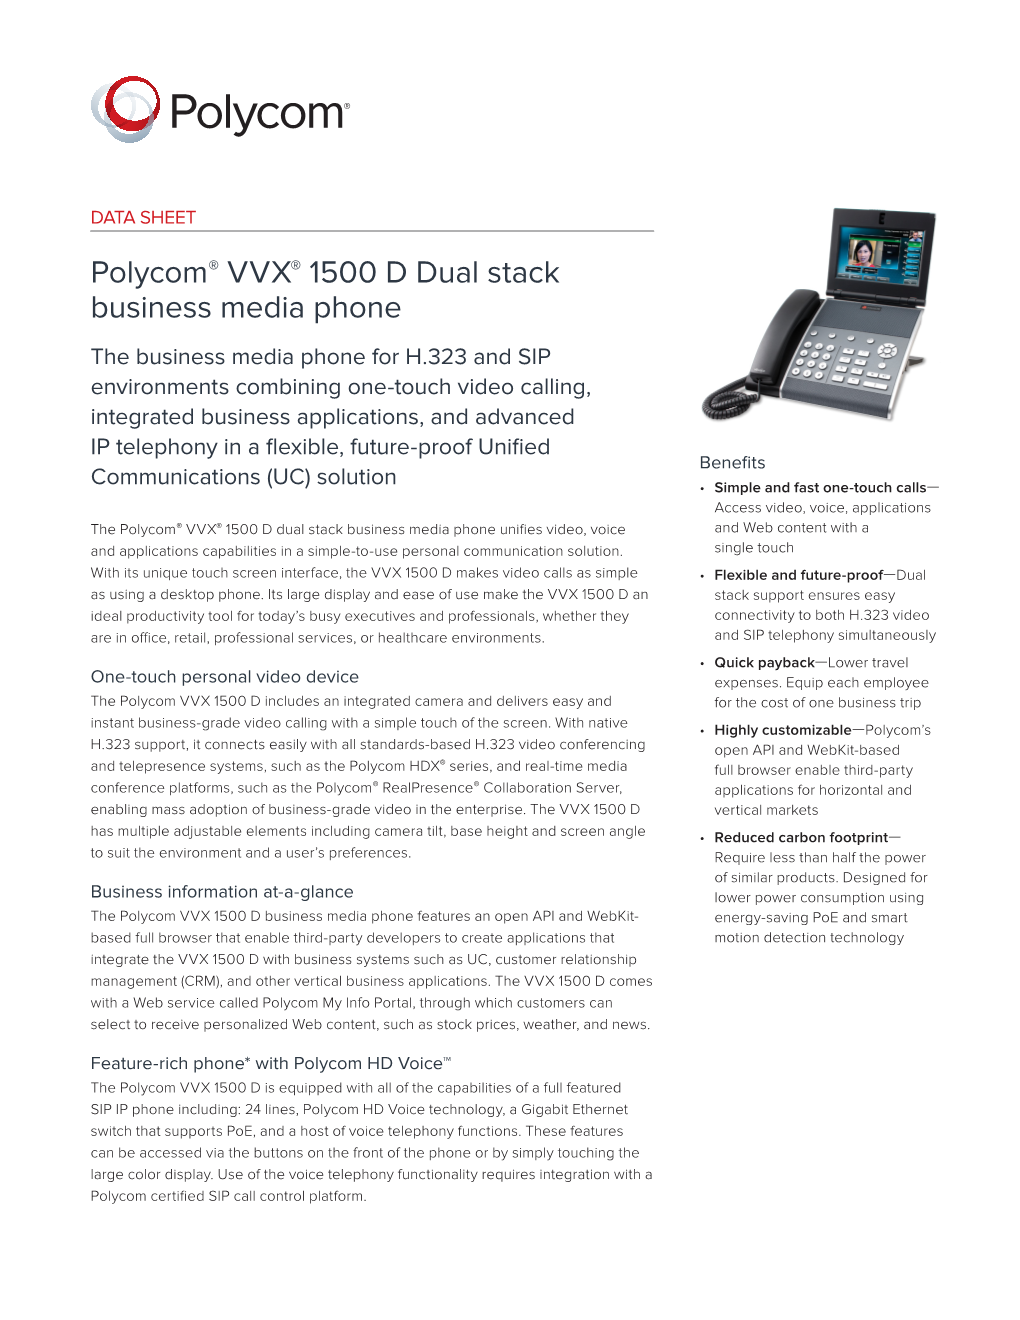 Polycom® VVX® 1500 D Dual Stack Business Media Phone